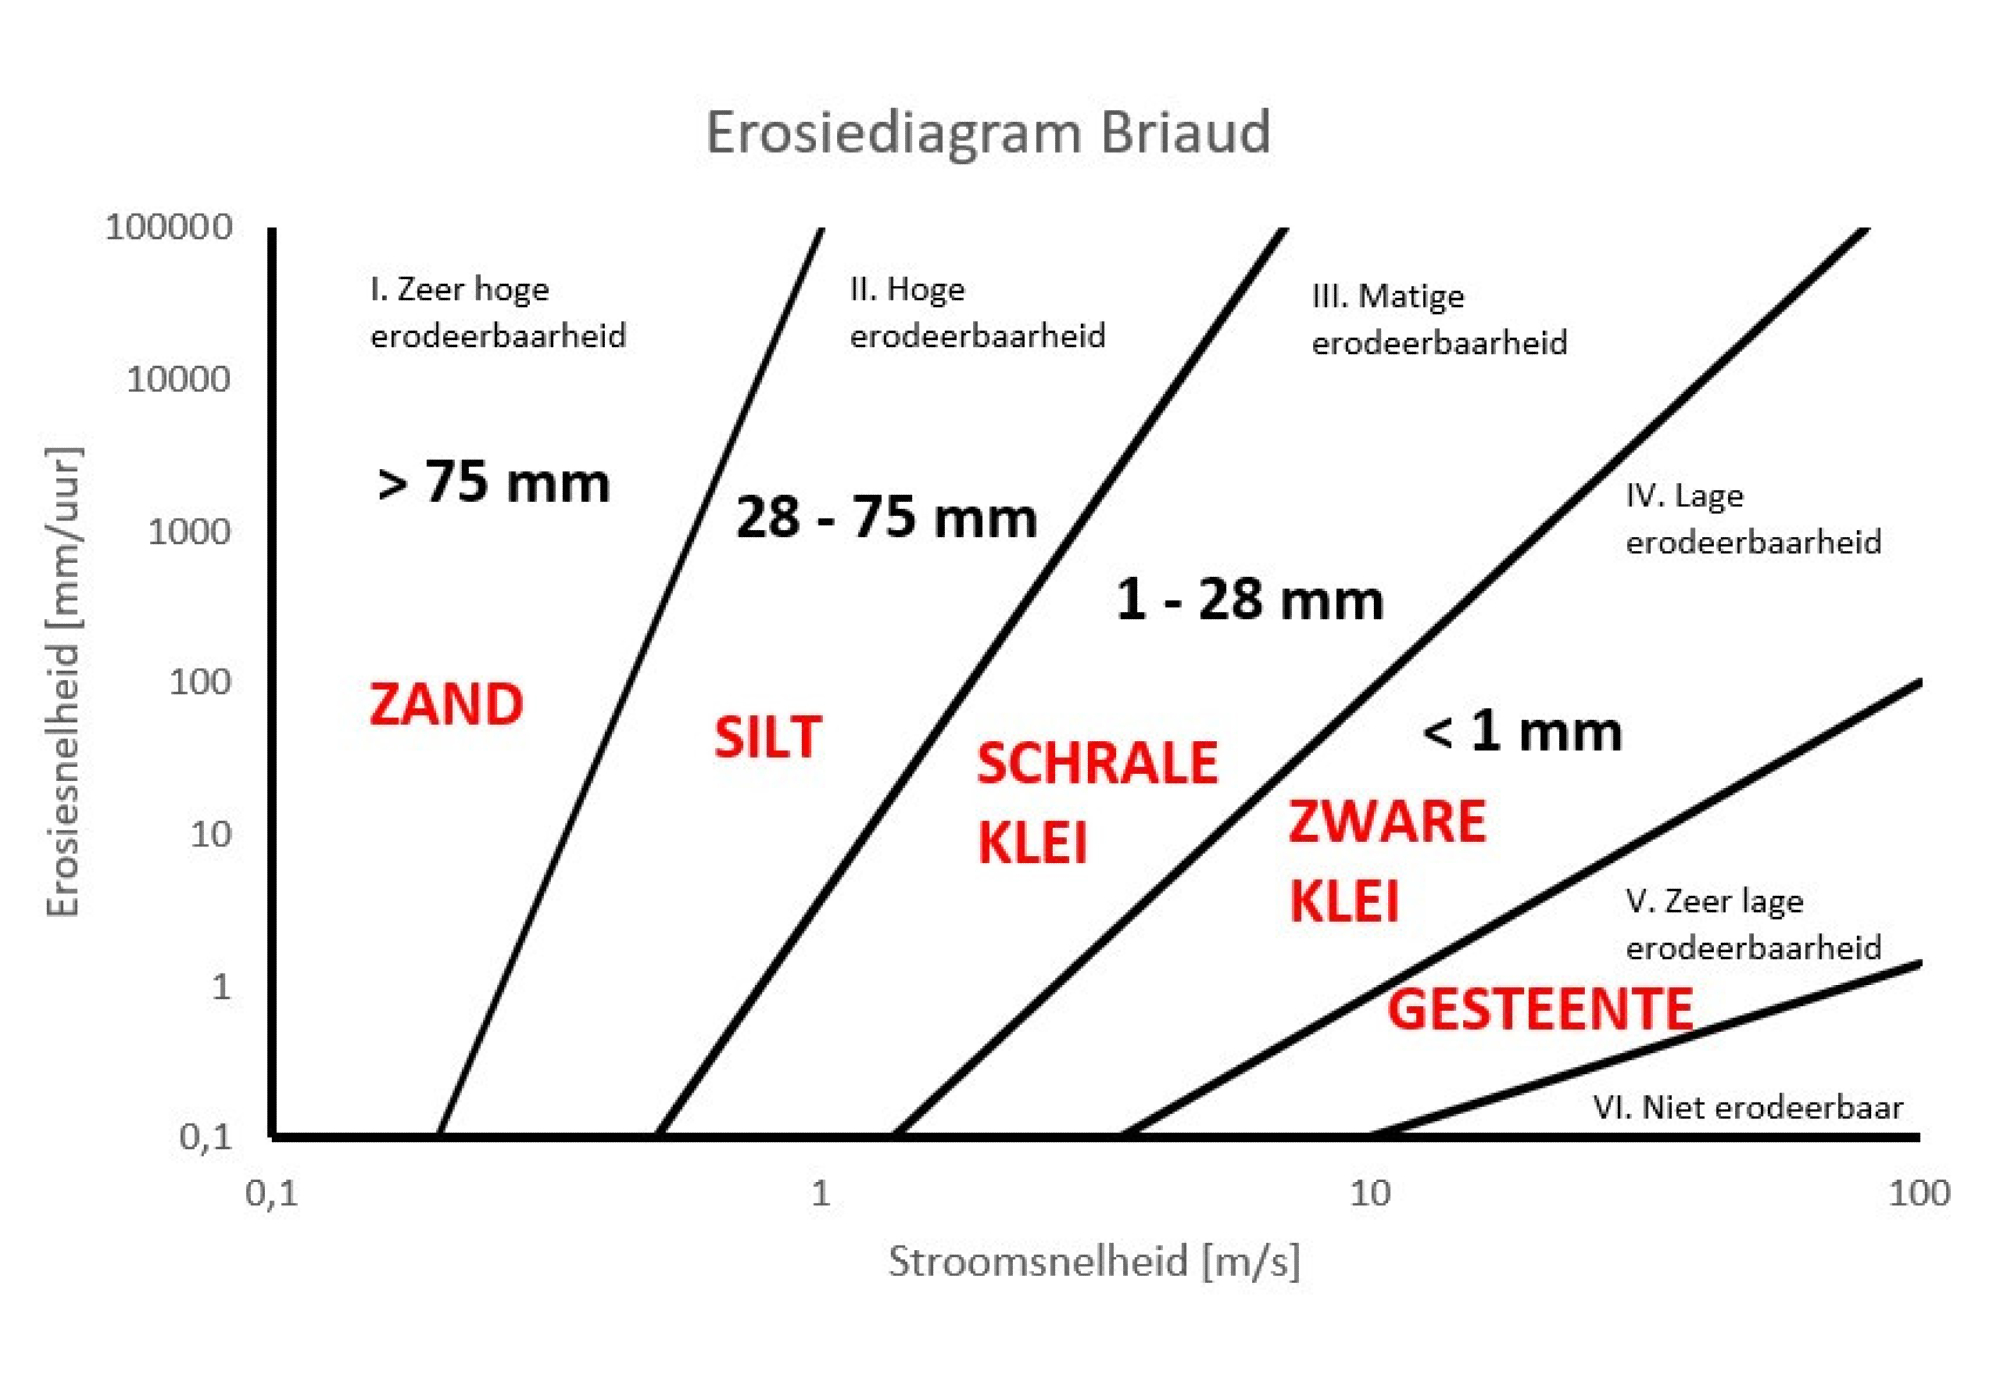 Erosieklasses afhankelijk van PET-diepte volgens Briaud (2012), met aanpassing volgens Rahimnejad en Ooi (2016). Materiaalaanduidingen zijn indicatief.